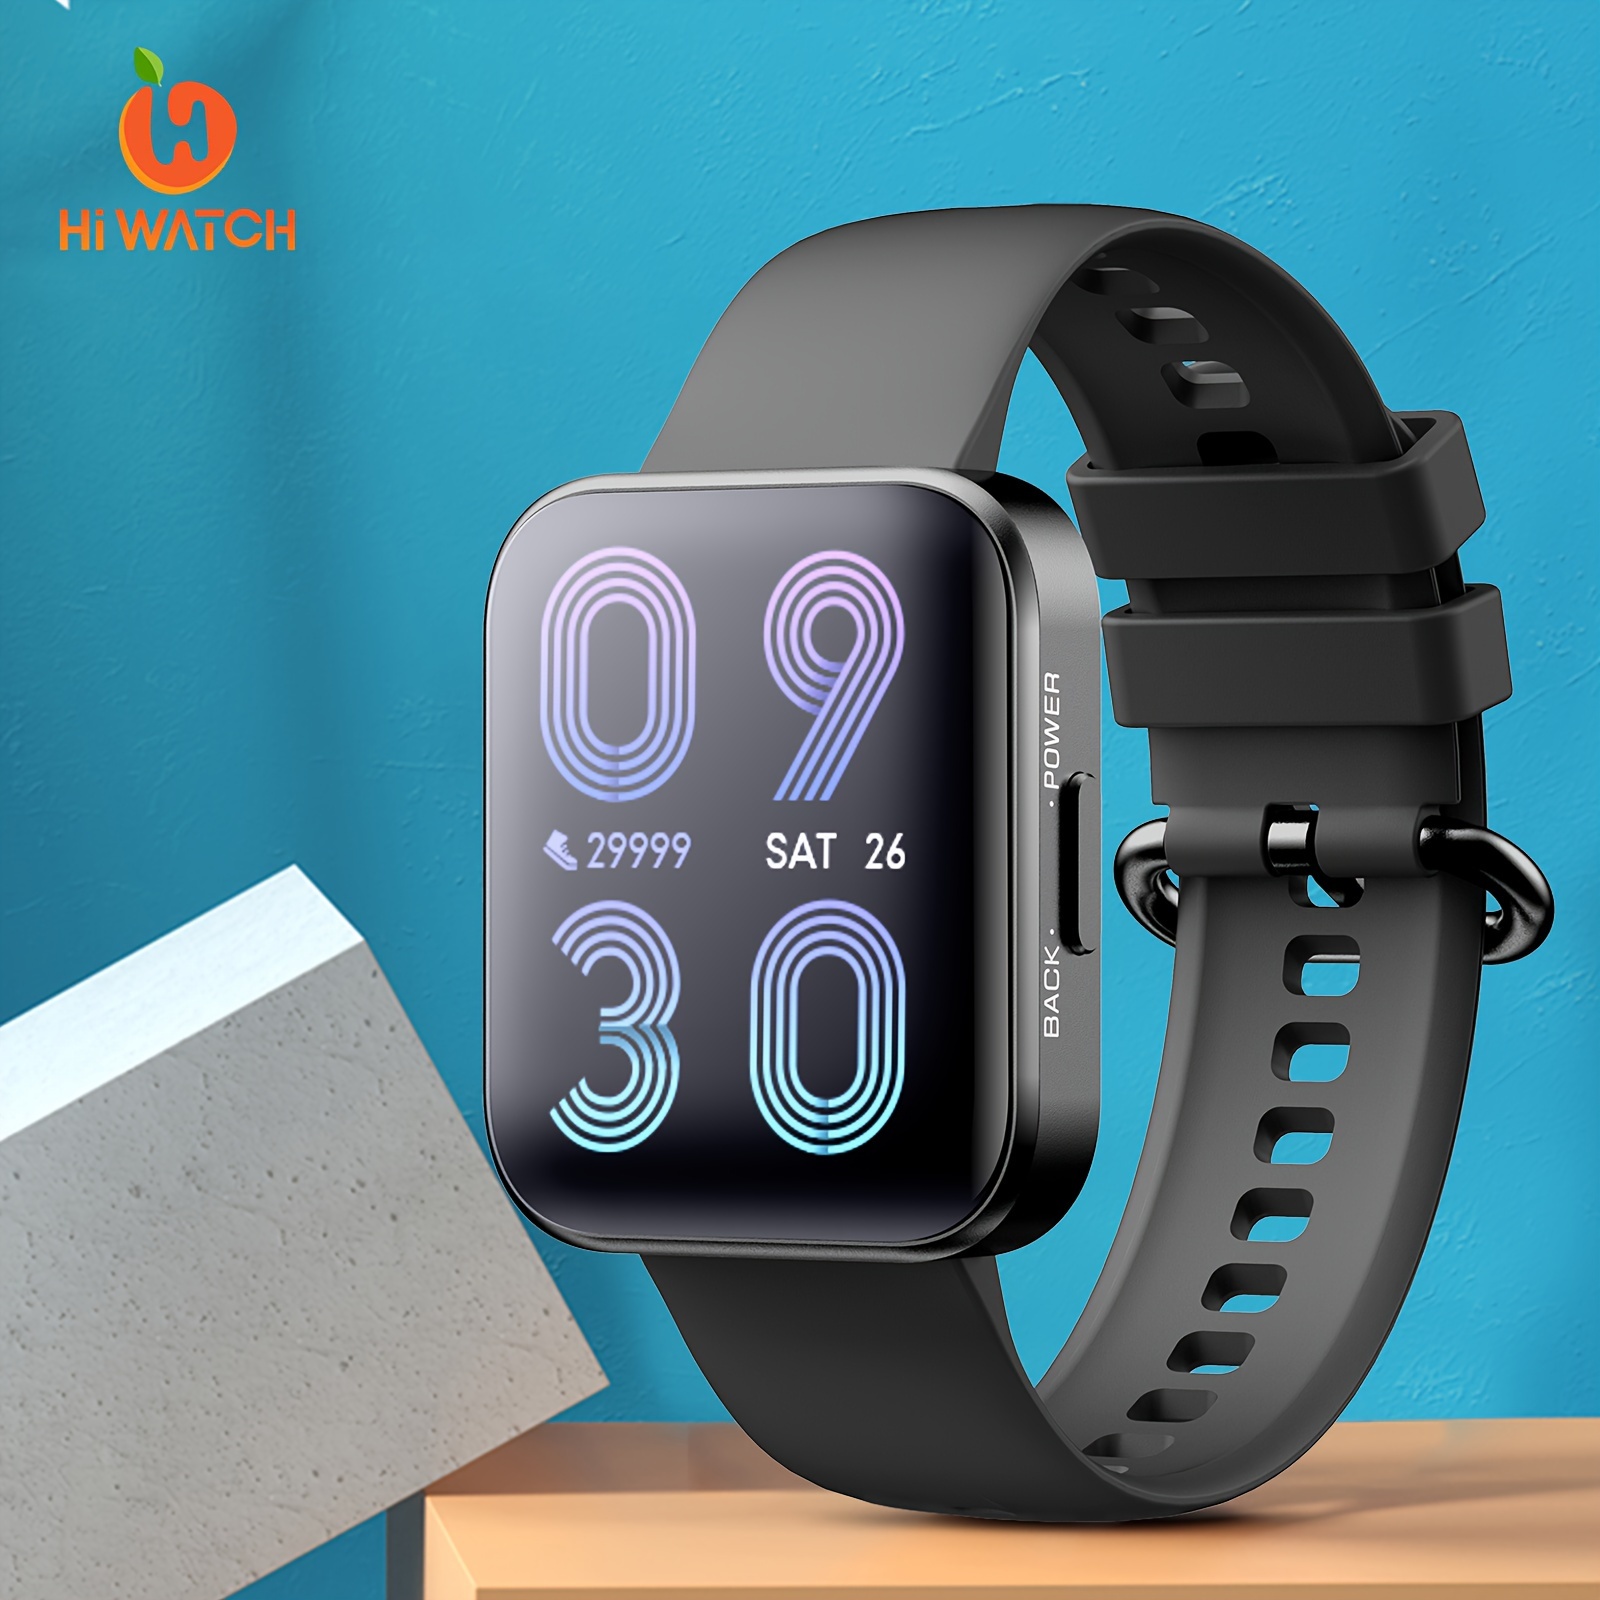  Reloj inteligente de regalo para hombres y mujeres, reloj  inteligente de pantalla táctil completa de 1.7 pulgadas con texto y llamada  para teléfonos Android iOS, relojes rastreadores de fitness GPS con